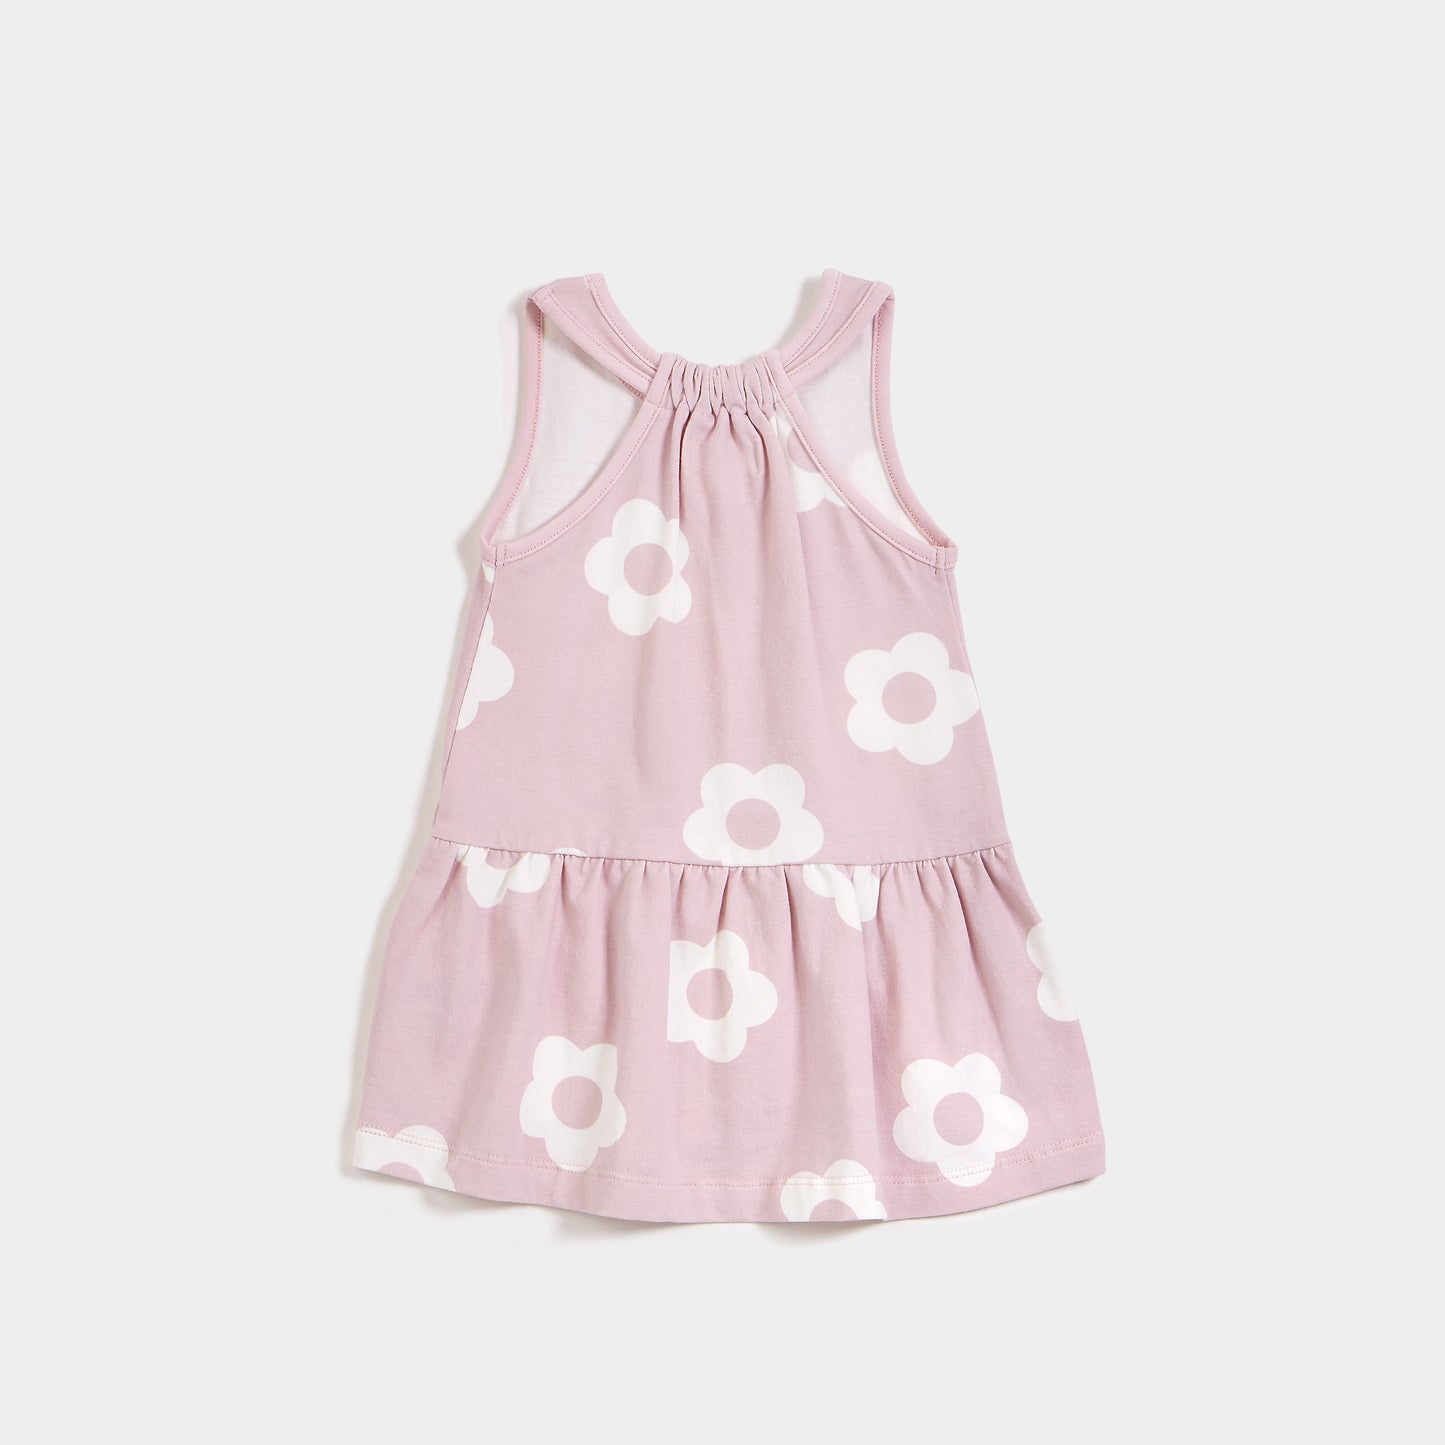 Miles the Label infant girl flower power print dress